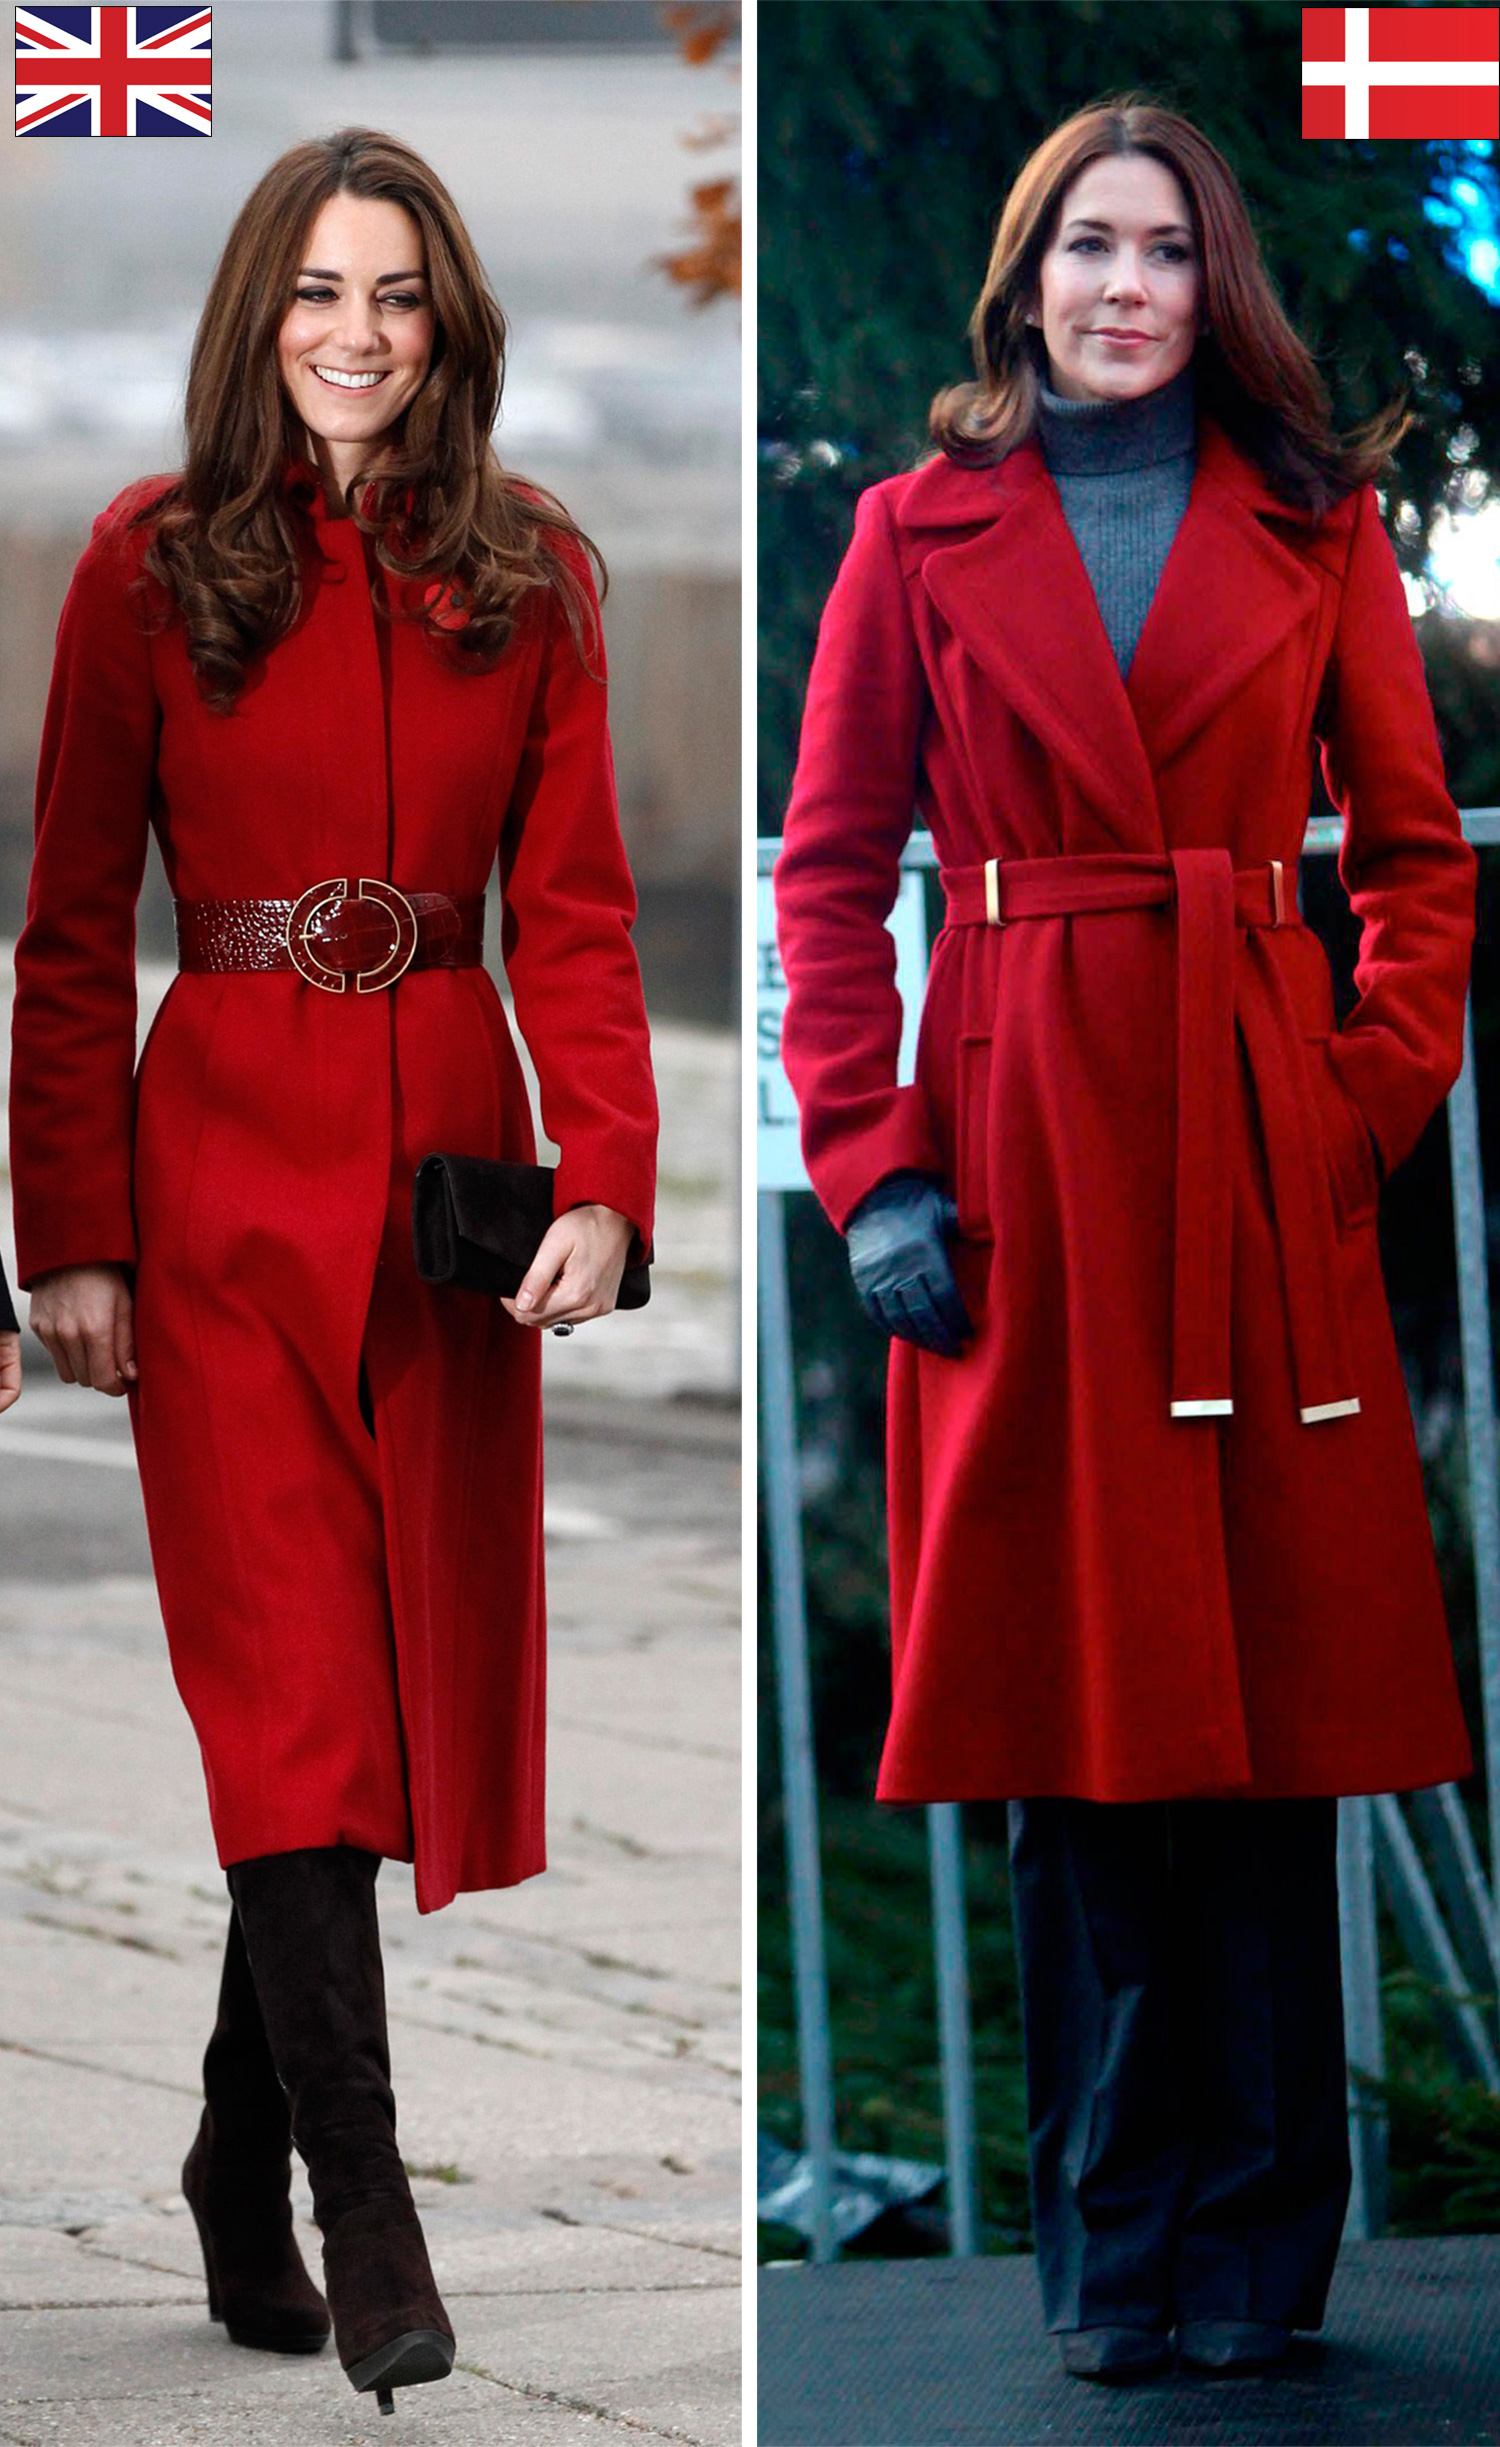 Beide haben ähnliche Stile und wurden bereits in der Vergangenheit hinsichtlich ihrer Modeauswahl vielfach verglichen